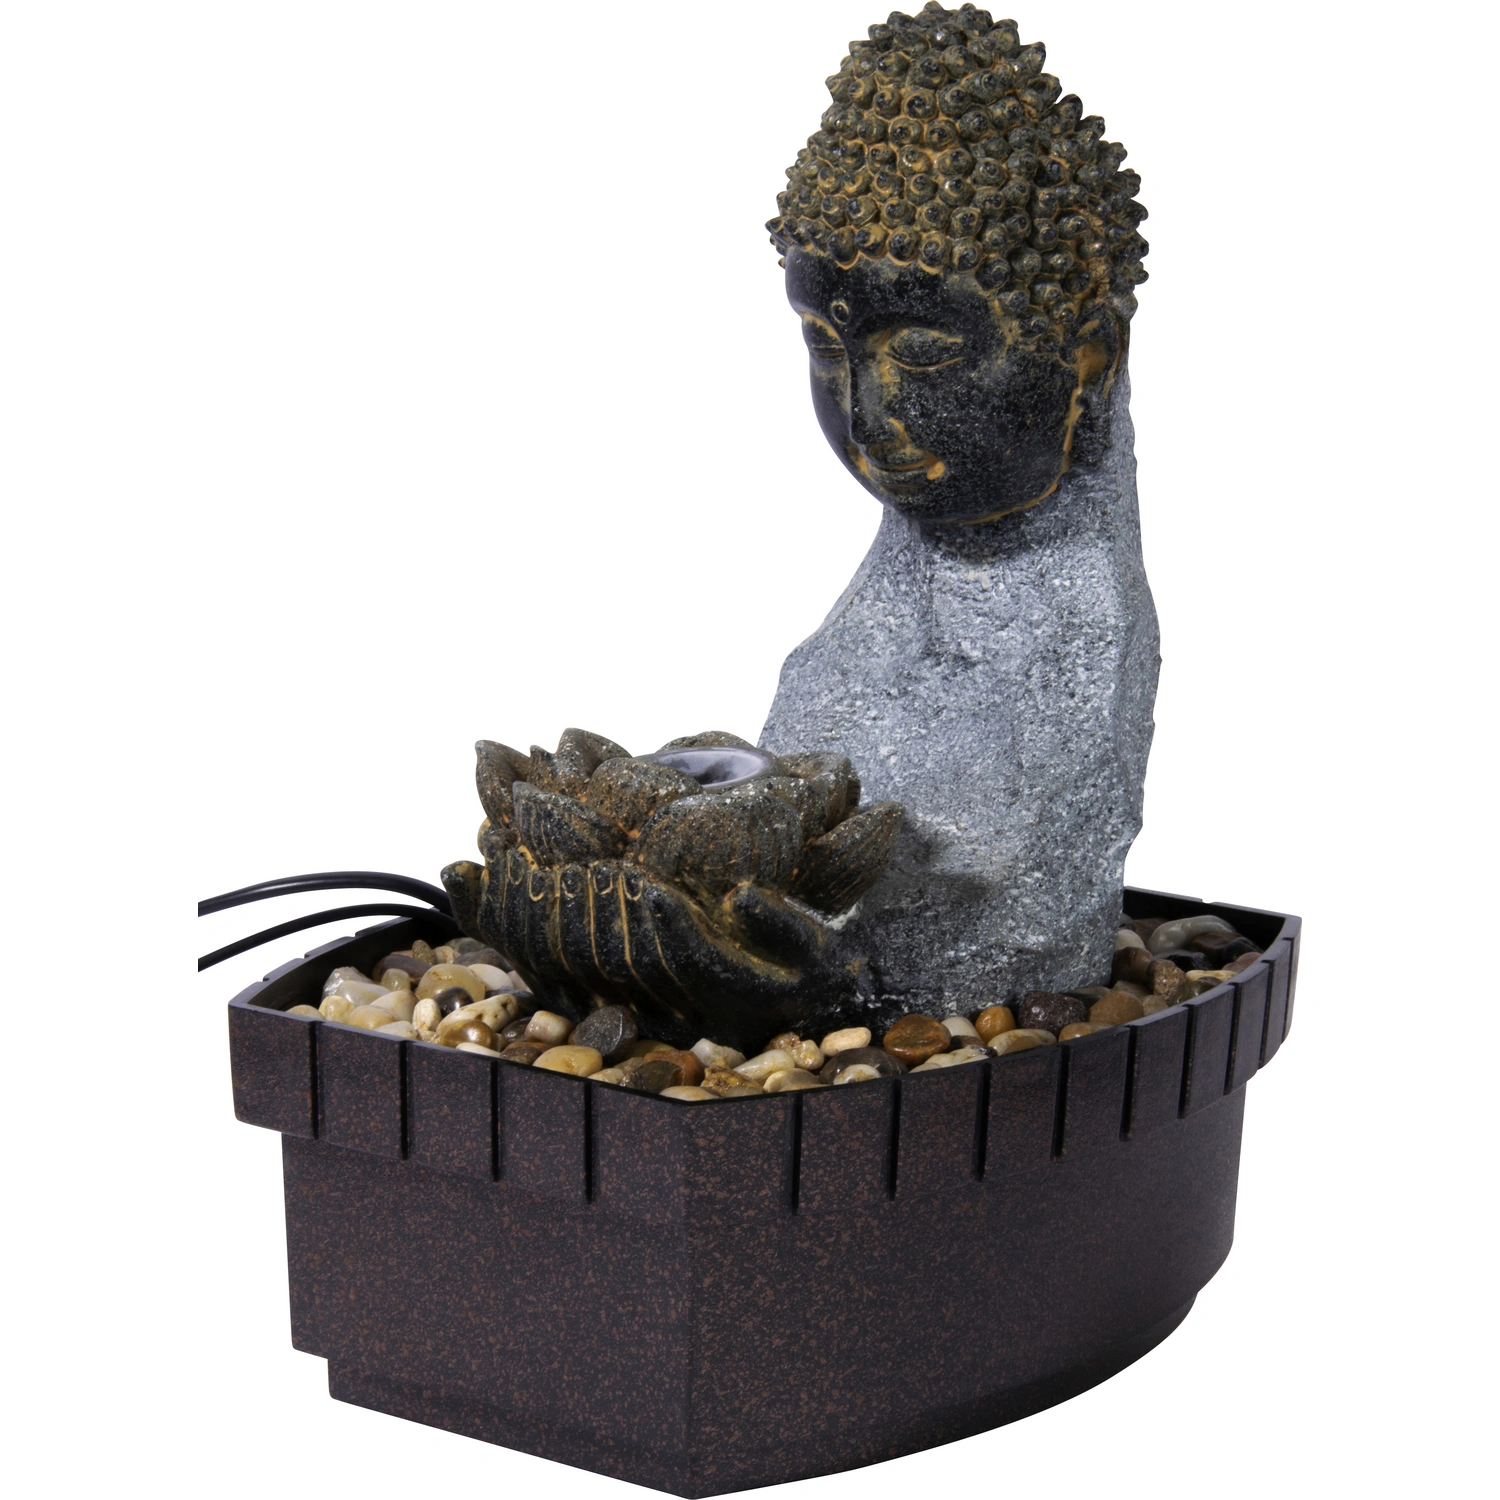 DOBAR Zimmerbrunnen, kleiner Buddha, BxHxL: 20 x 26 x 17 cm, grau